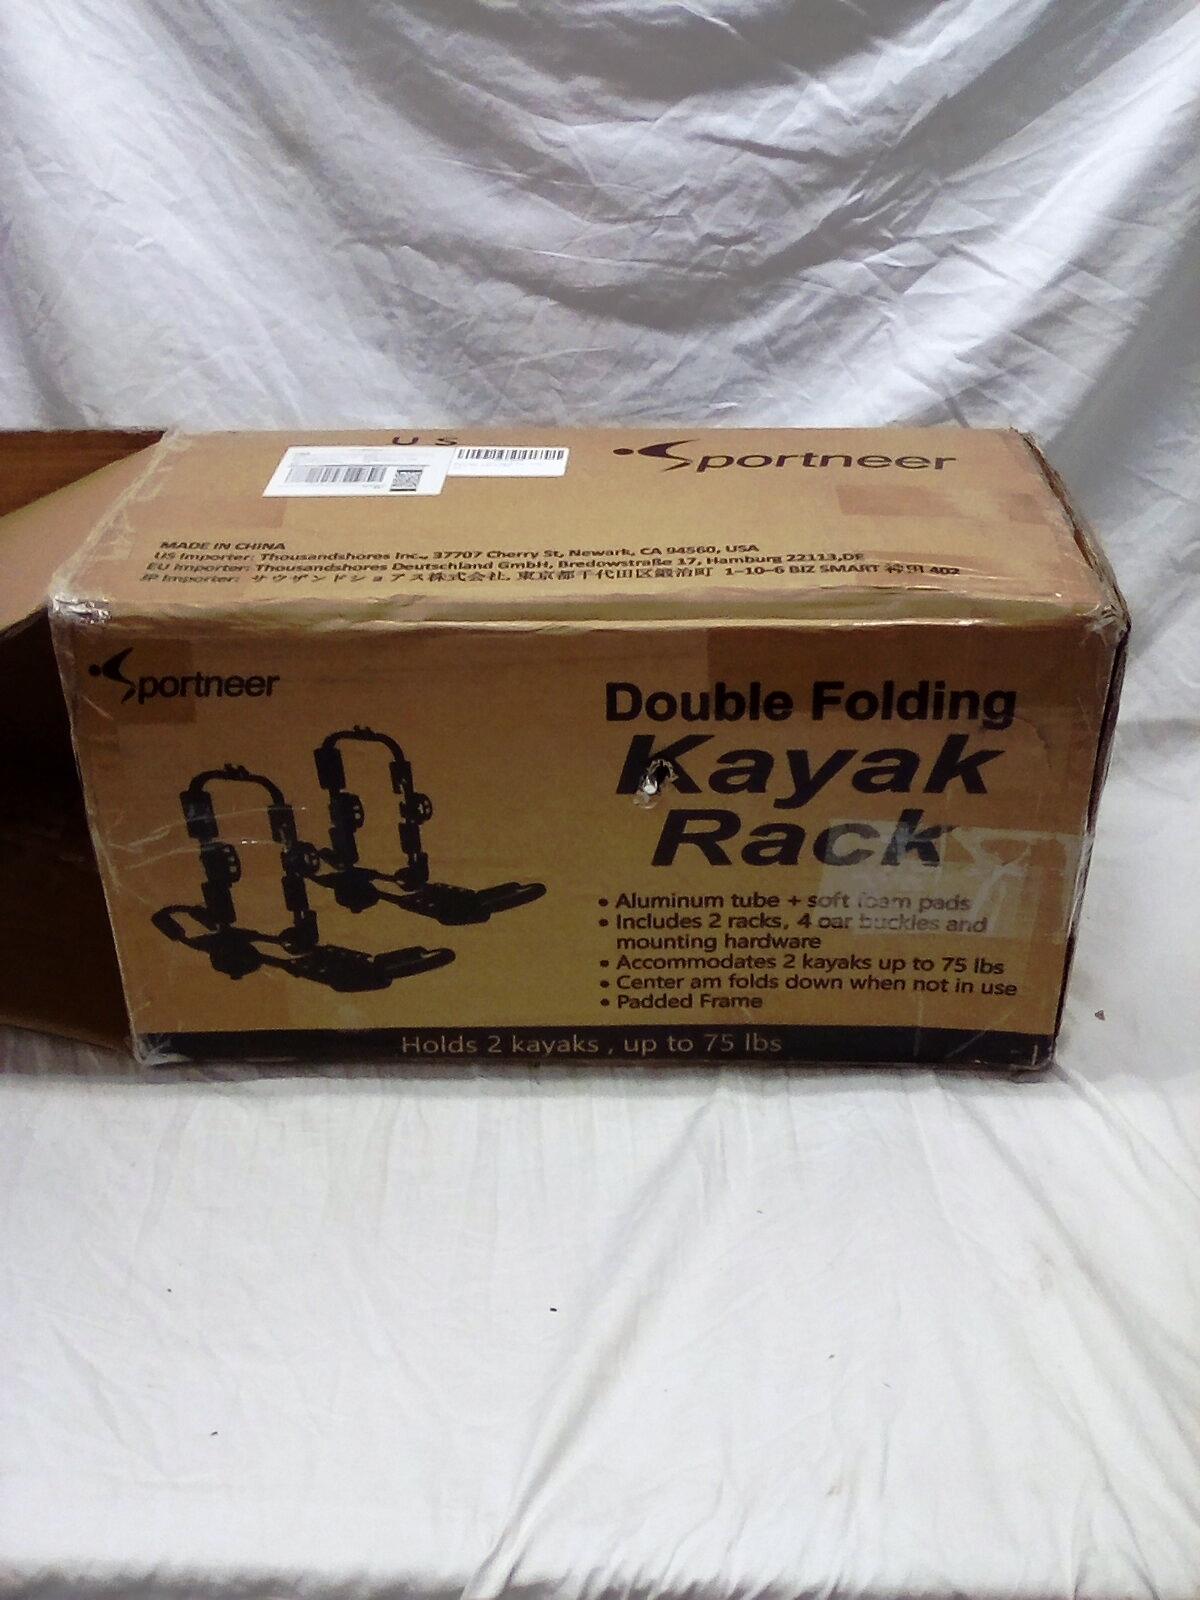 Double Folding Kayak Rack